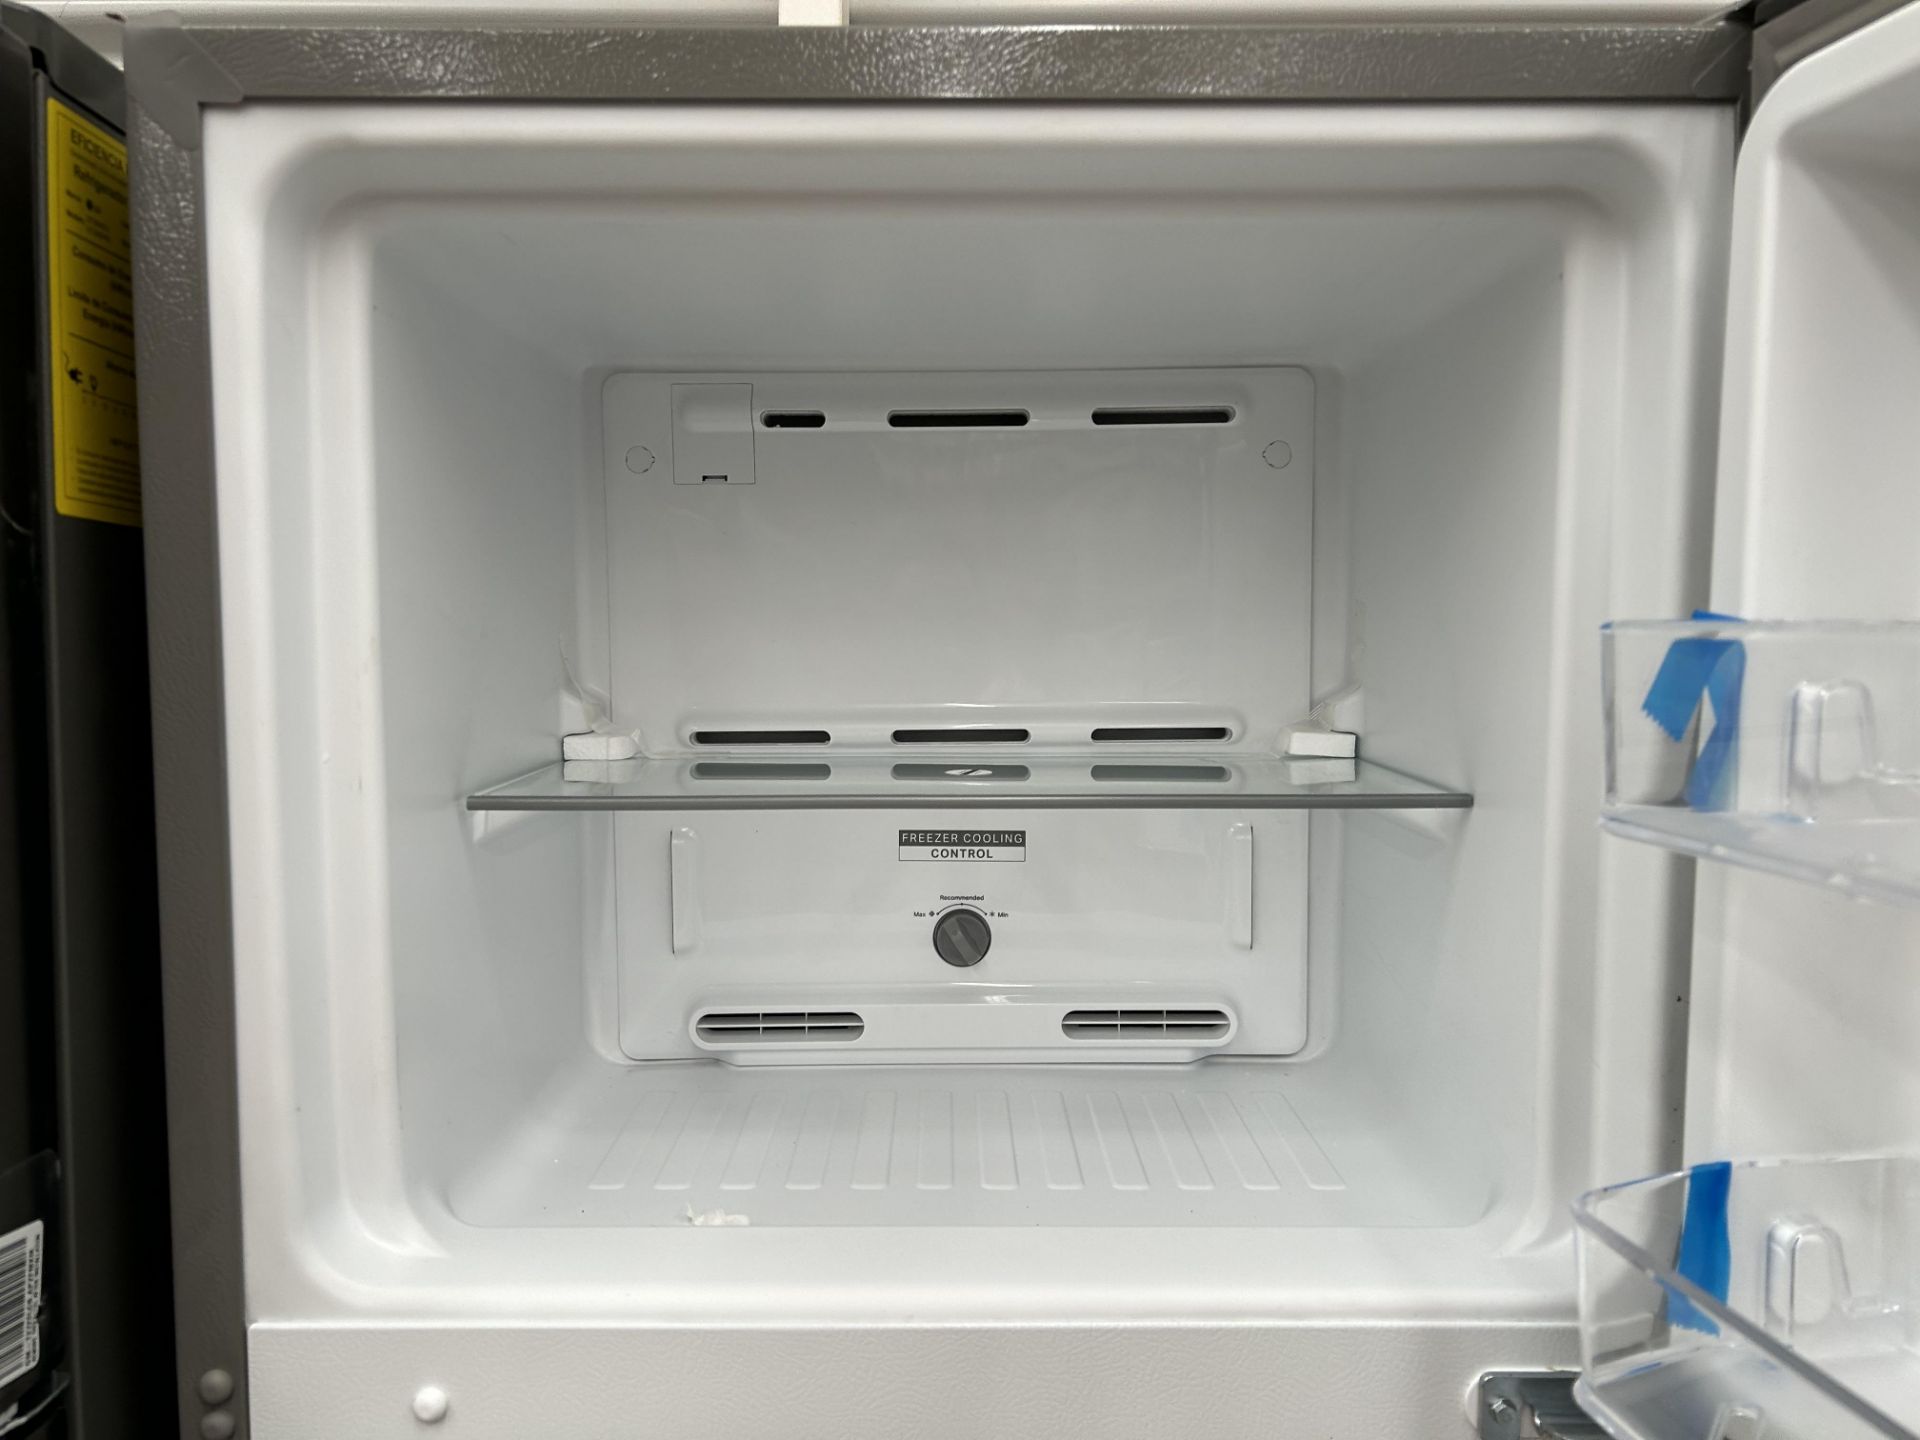 Lote de 2 refrigeradores contiene: 1 Refrigerador Marca LG, Modelo GT29BPPK, Serie 41191, Color GRI - Image 6 of 10